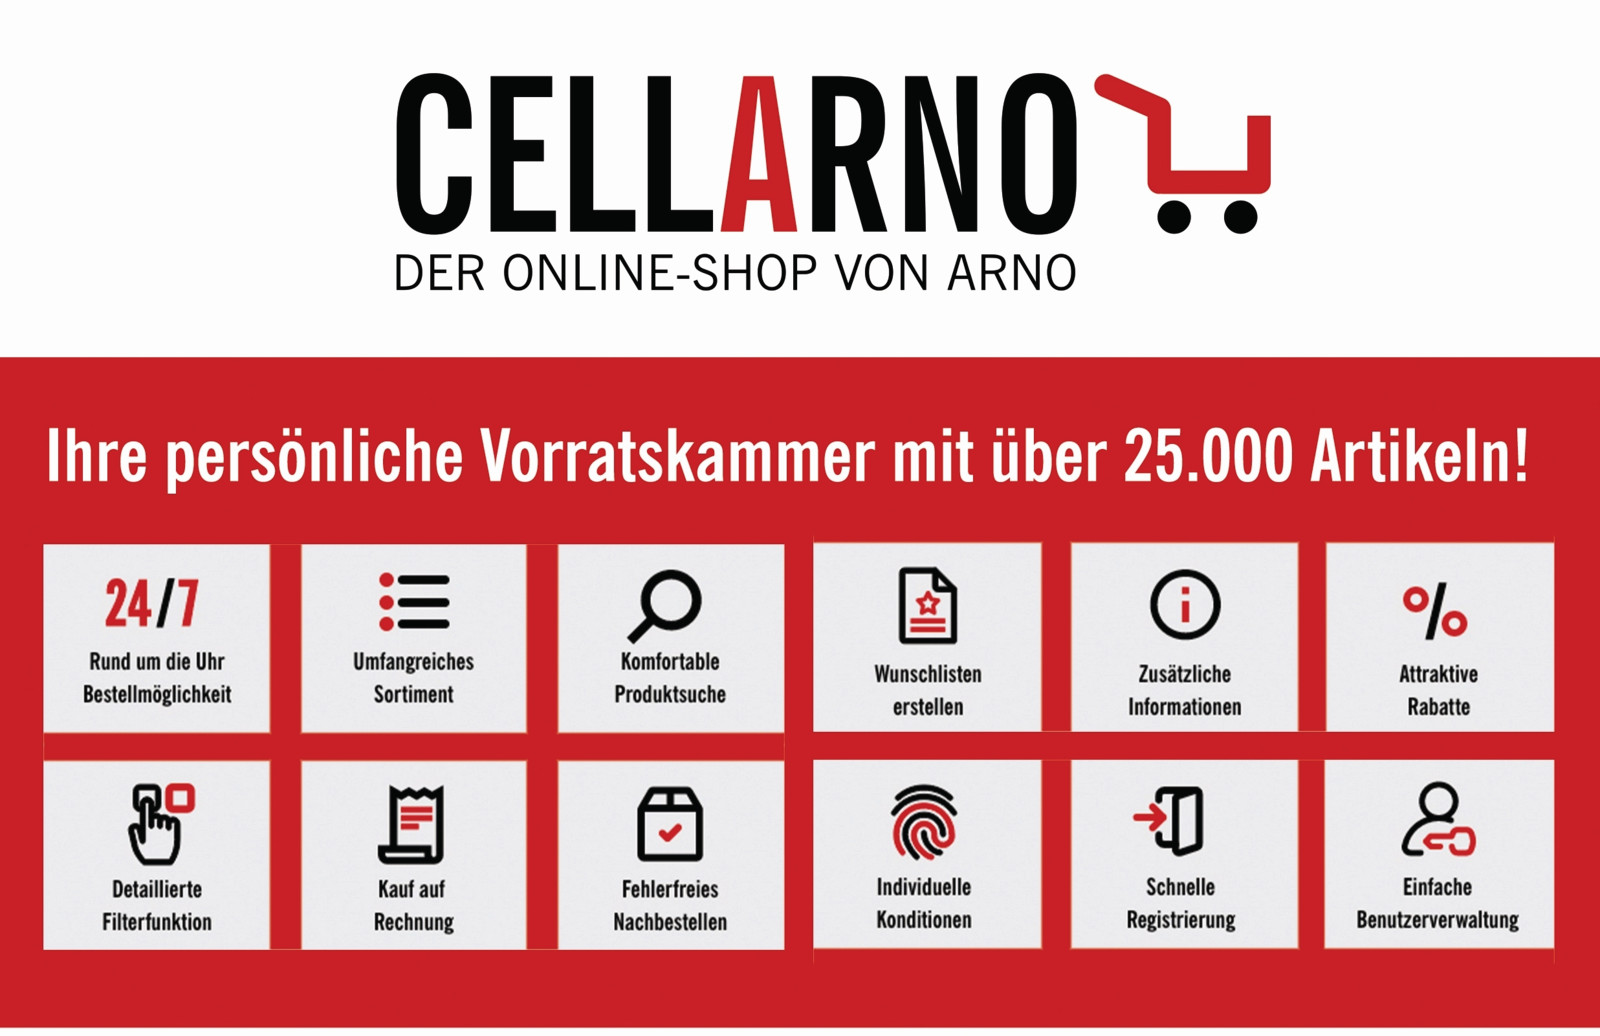 Über den Online-Shop Cellarno von Arno Werkzeuge bestellen jetzt auch Kunden in Italien aus mehr als 25.000 Artikeln online rund um die Uhr Zerspanungswerkzeuge und Verbrauchsmaterialien.